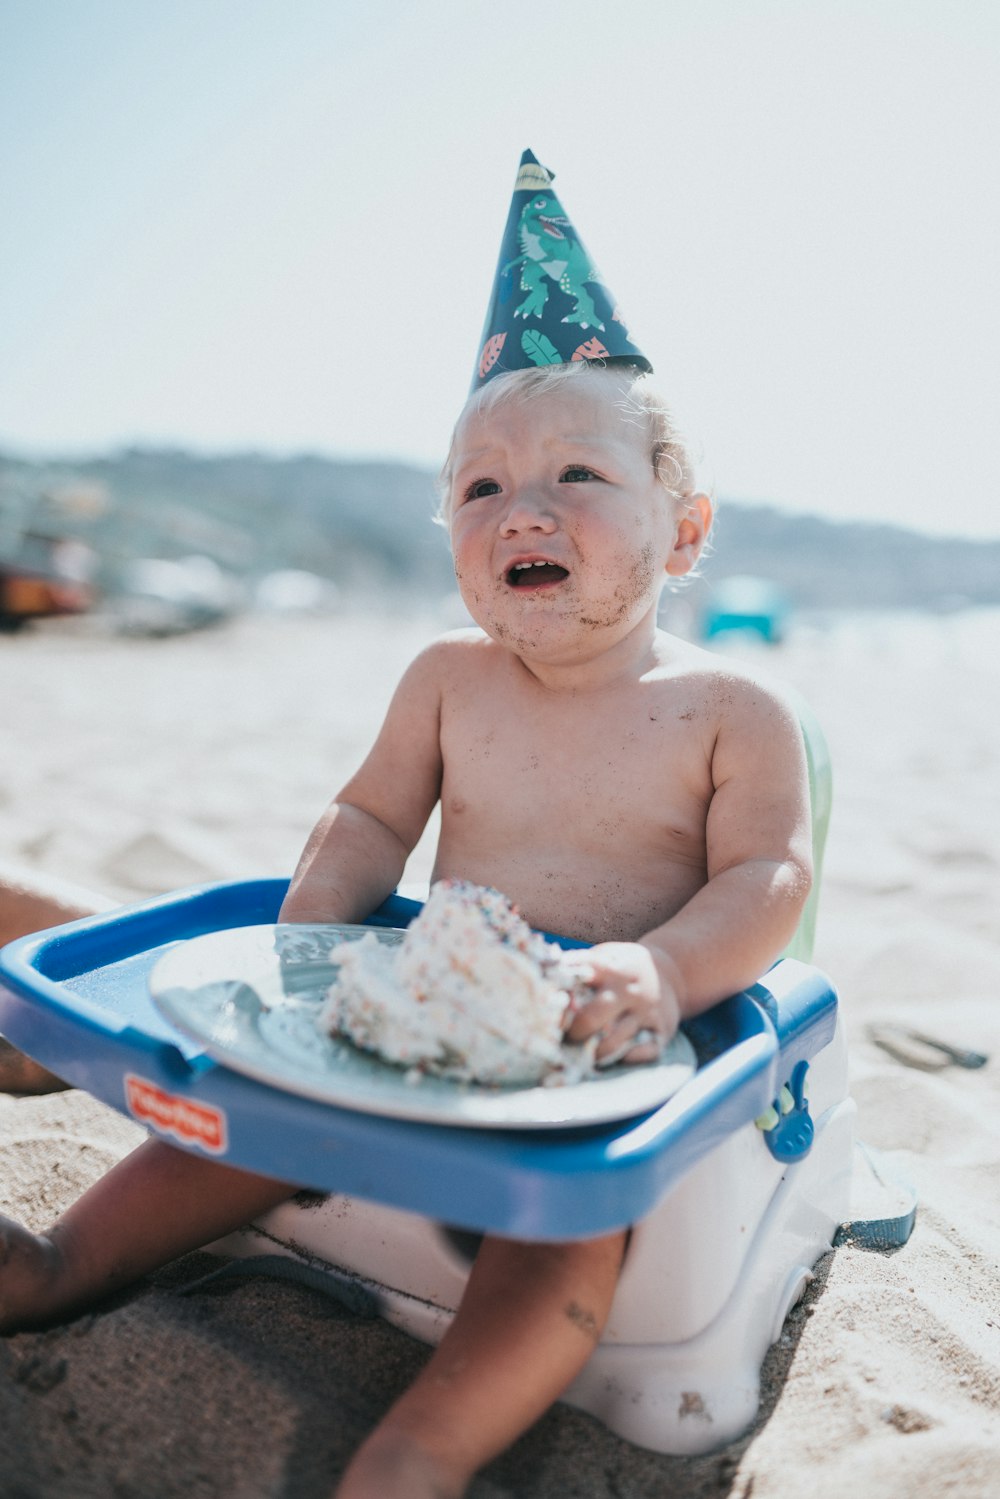 Bambino in topless seduto sulla vasca da bagno di plastica blu sulla spiaggia durante il giorno